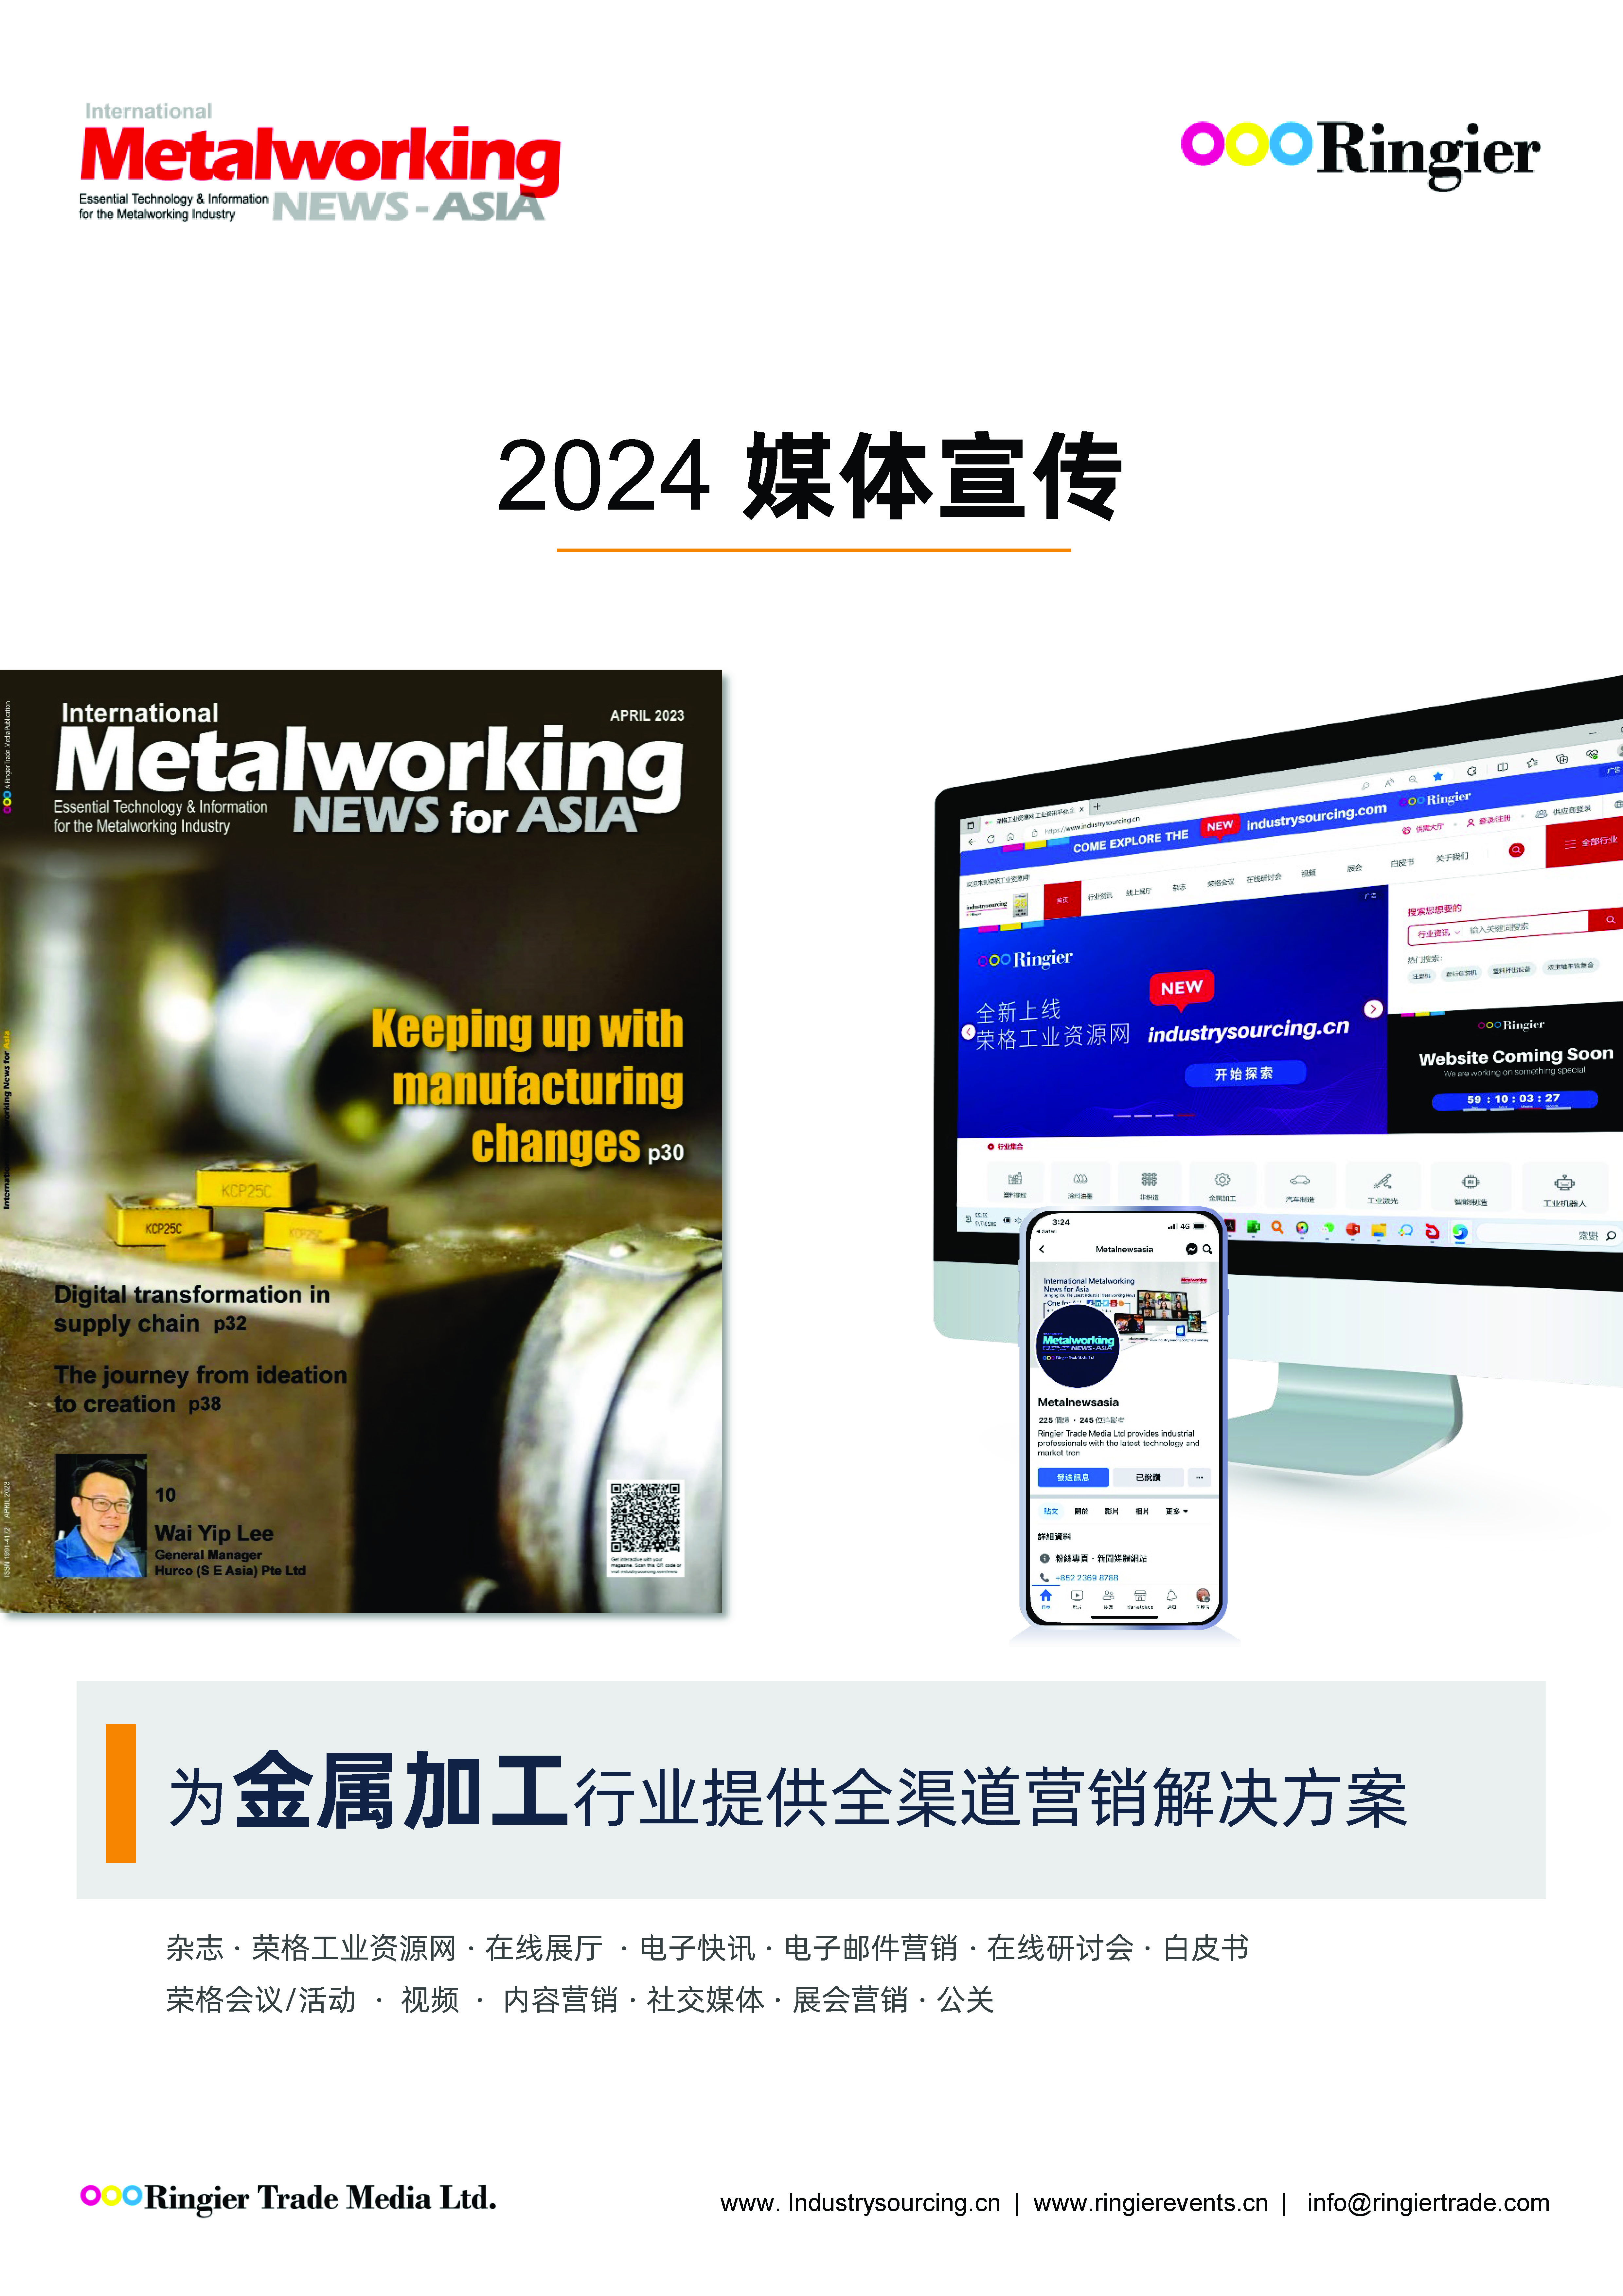 2024 國際金屬加工商情-亞洲版 Media kit